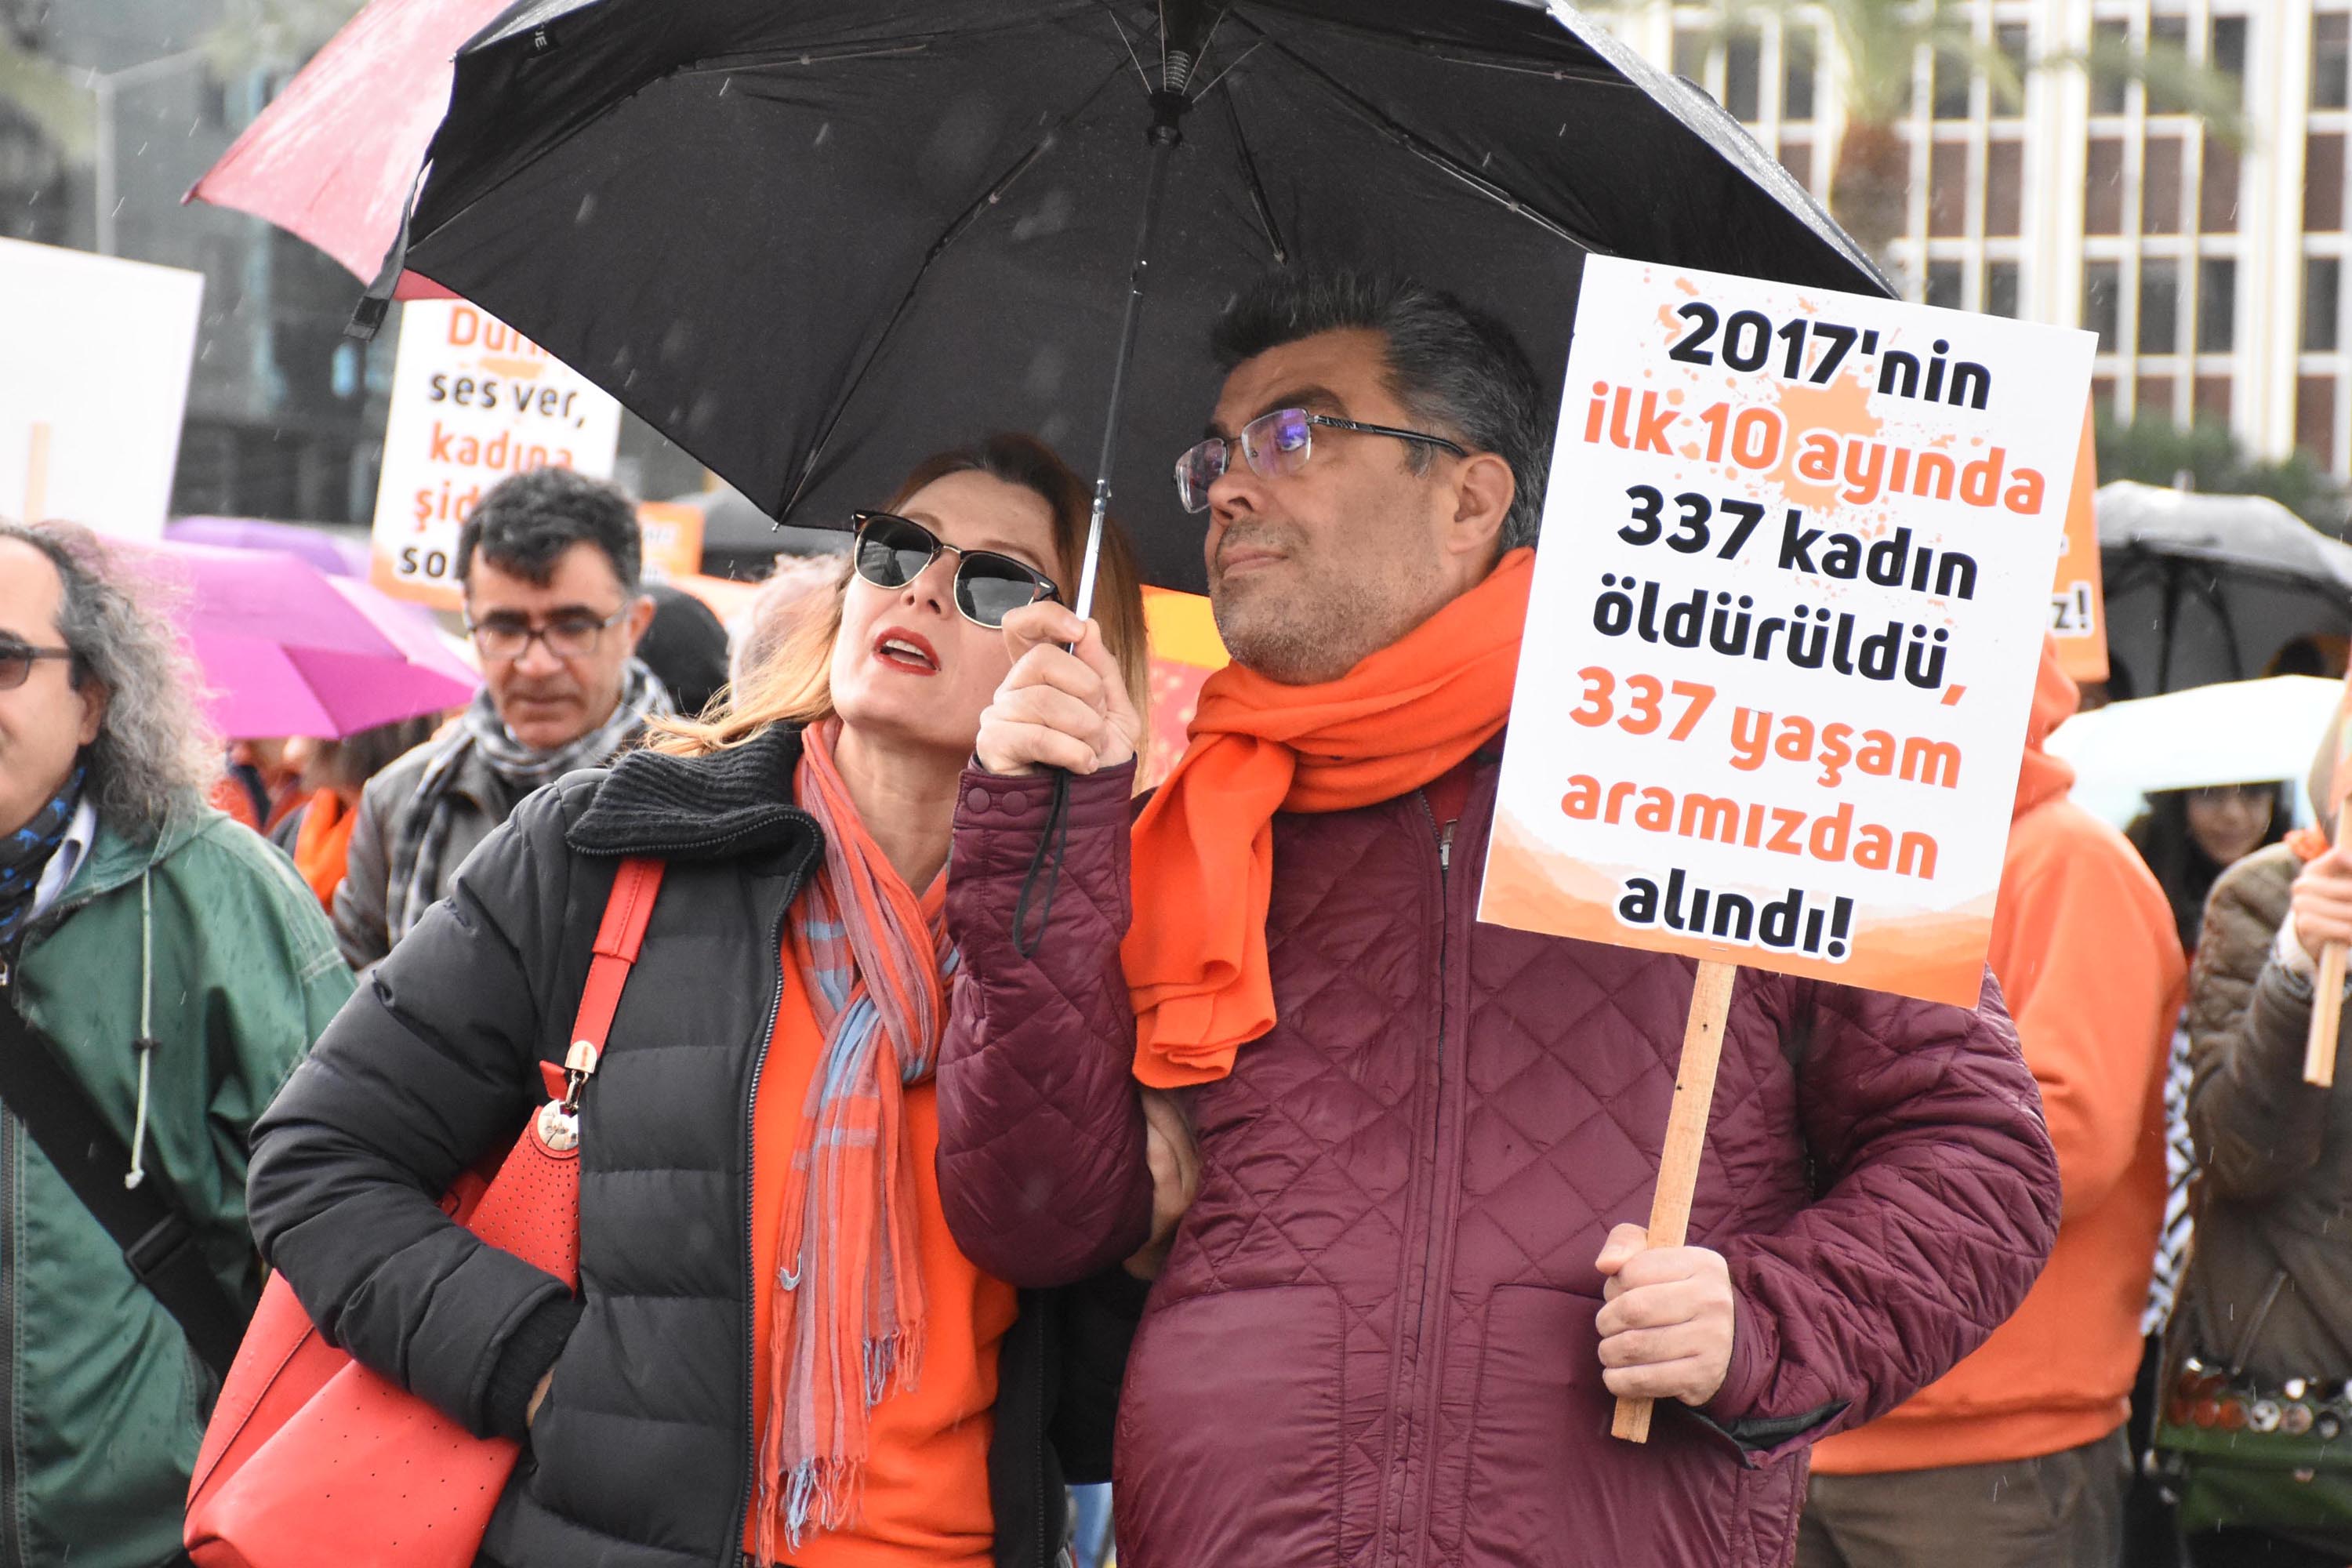 İzmir'de kadınlar kadına şiddeti protesto için yürüdü